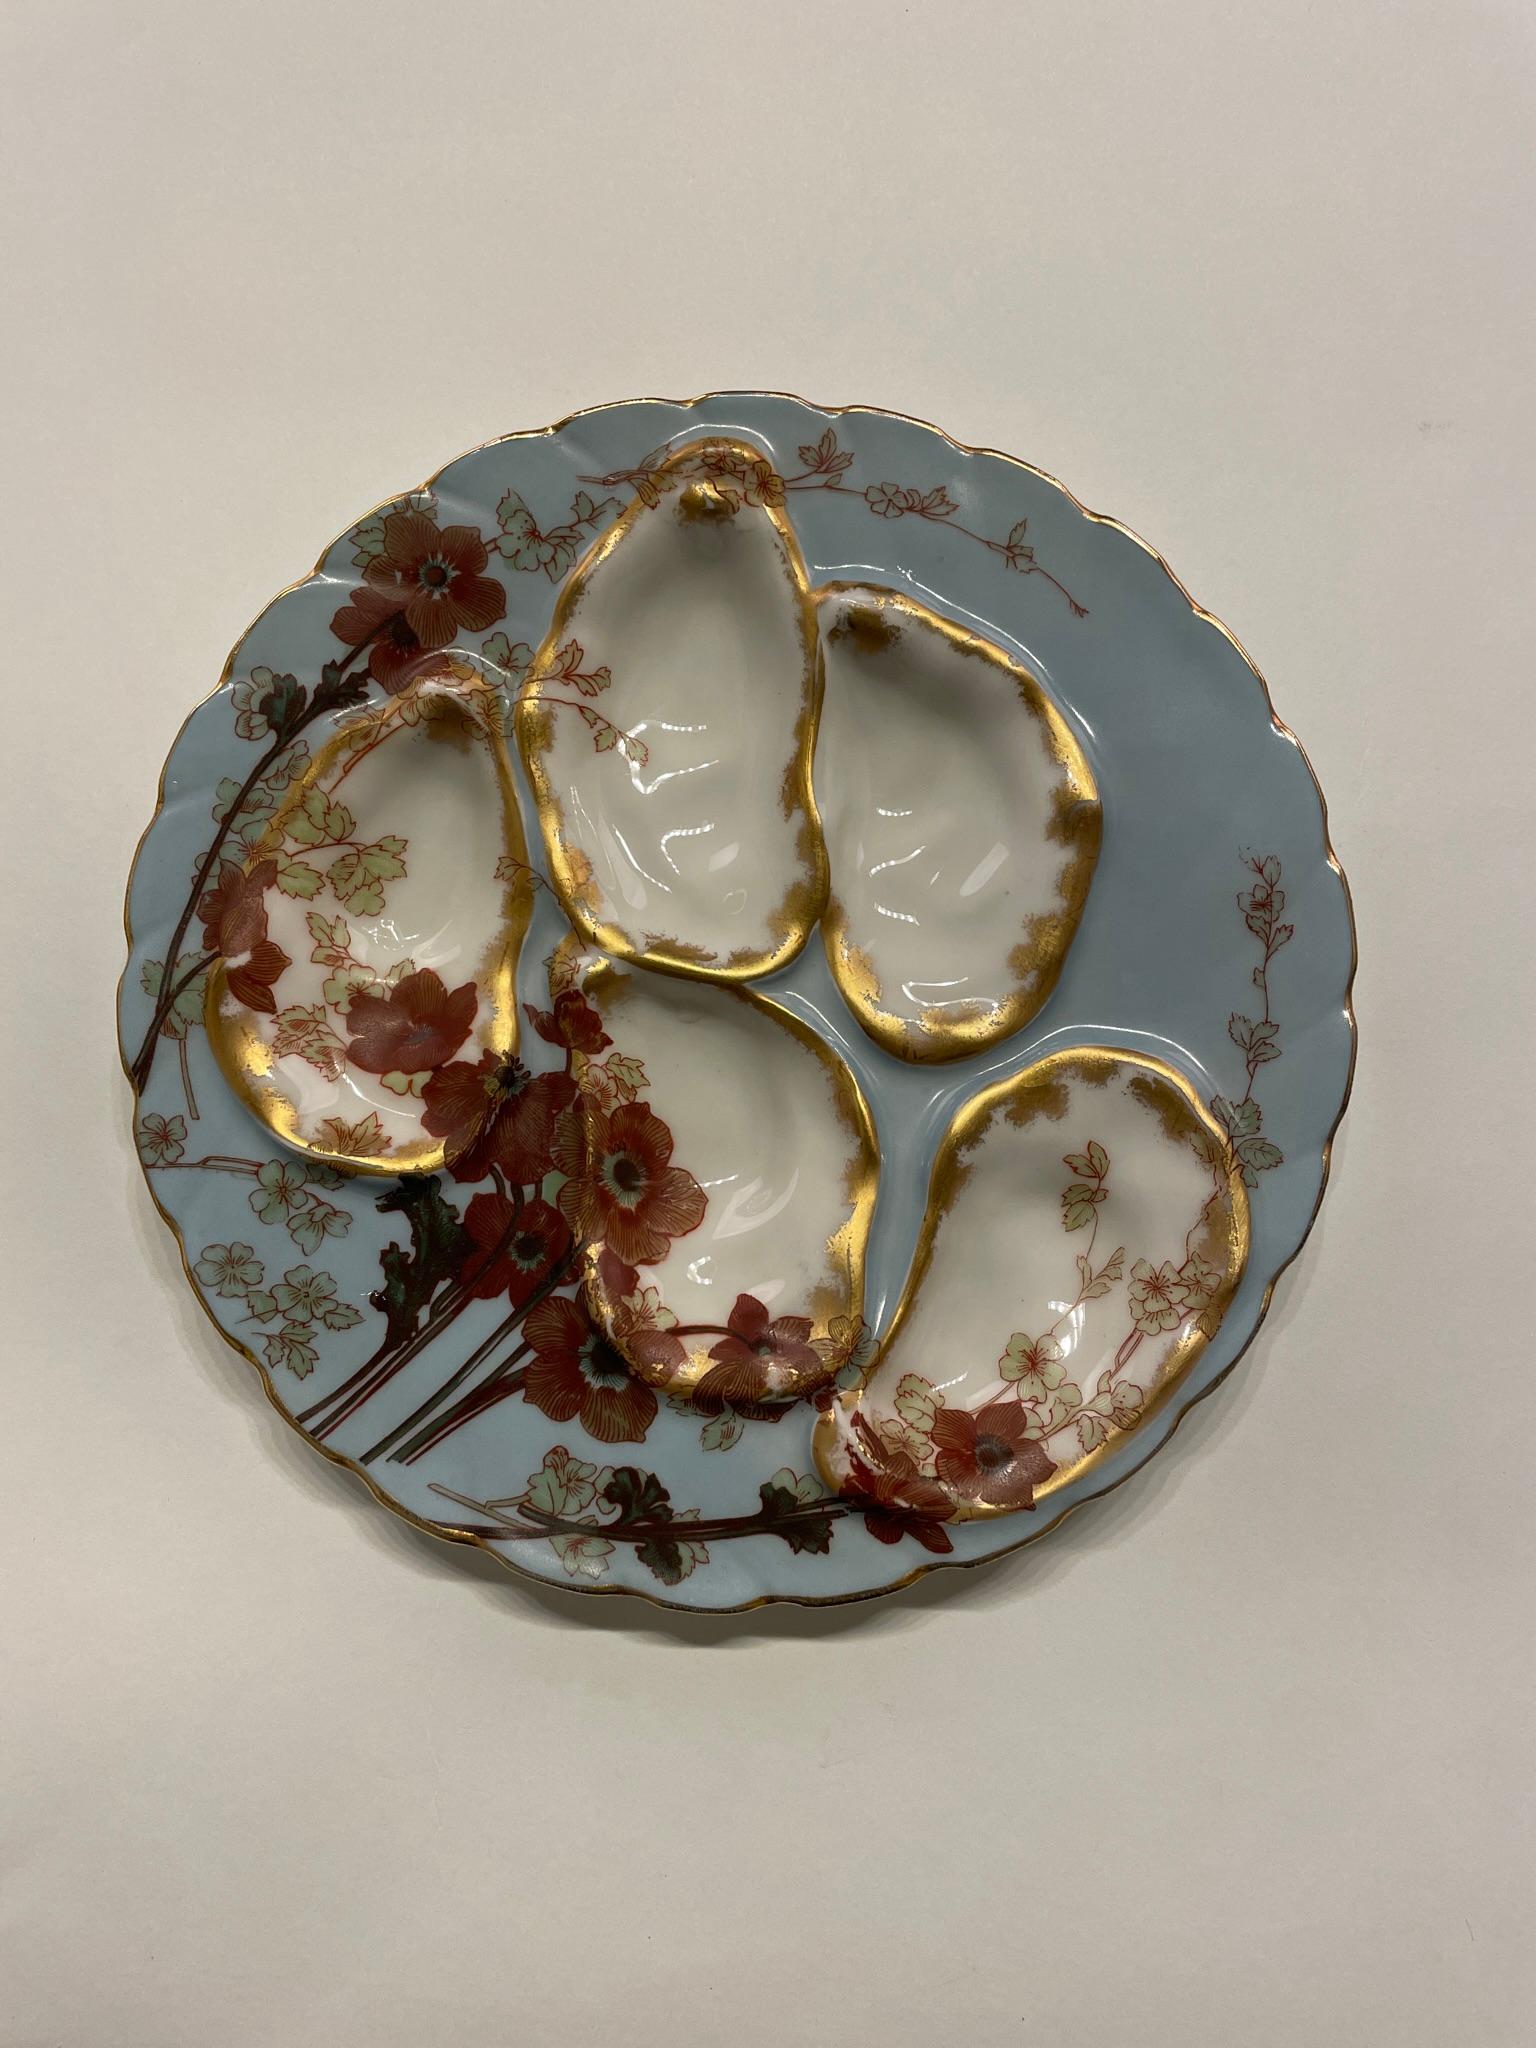 Assiette à huîtres en porcelaine à décor doré sur fond bleu pâle. Estampillé au dos Wright Tyndale & Van Roden à Philadelphie. Excellent état. Les dimensions sont de 7,75